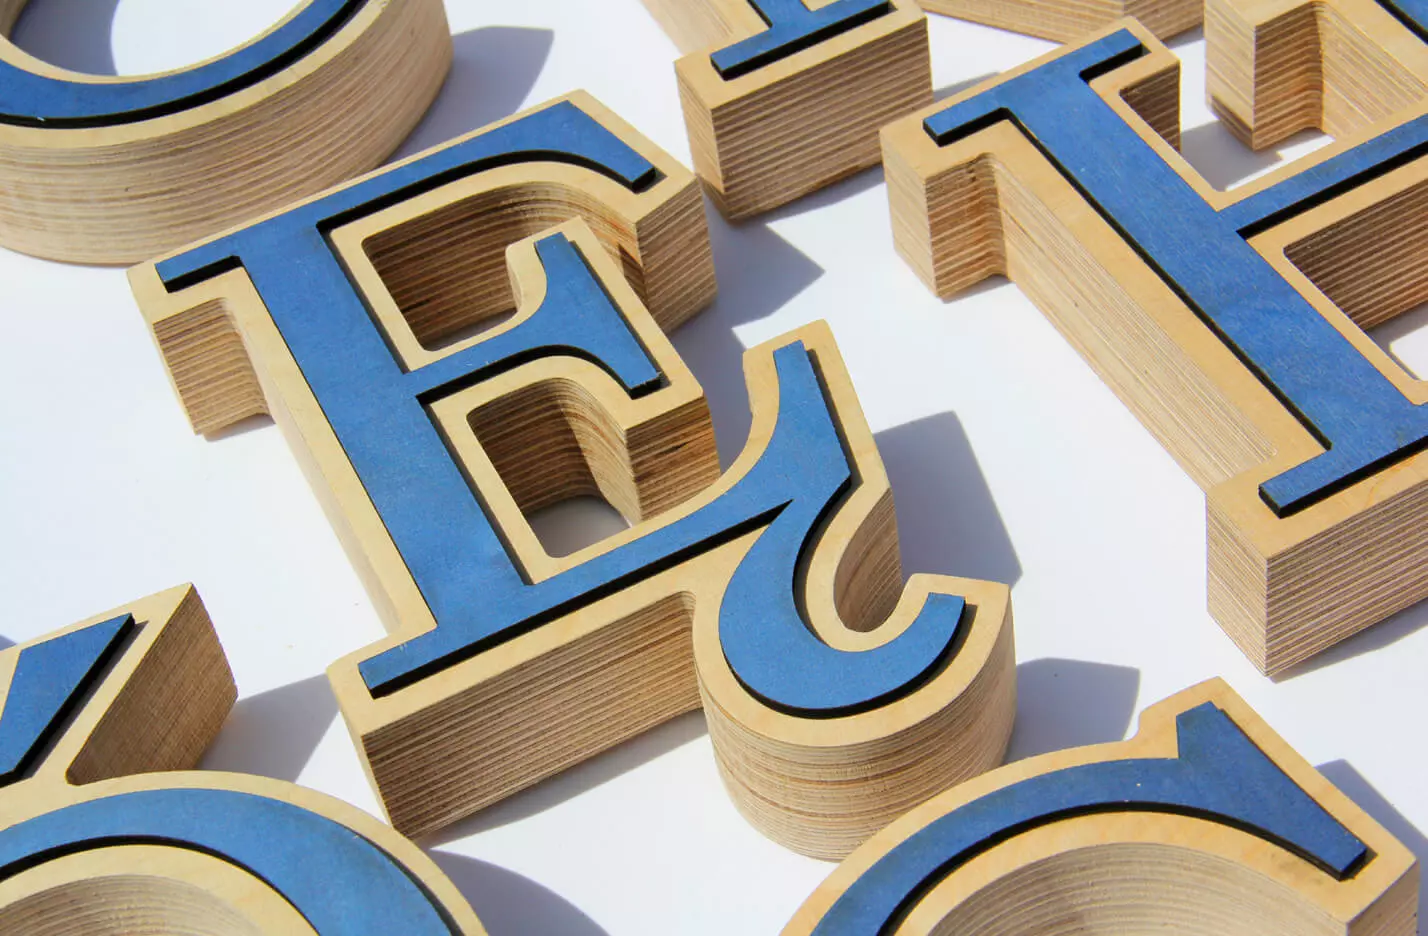 letras decorativas de madera en azul